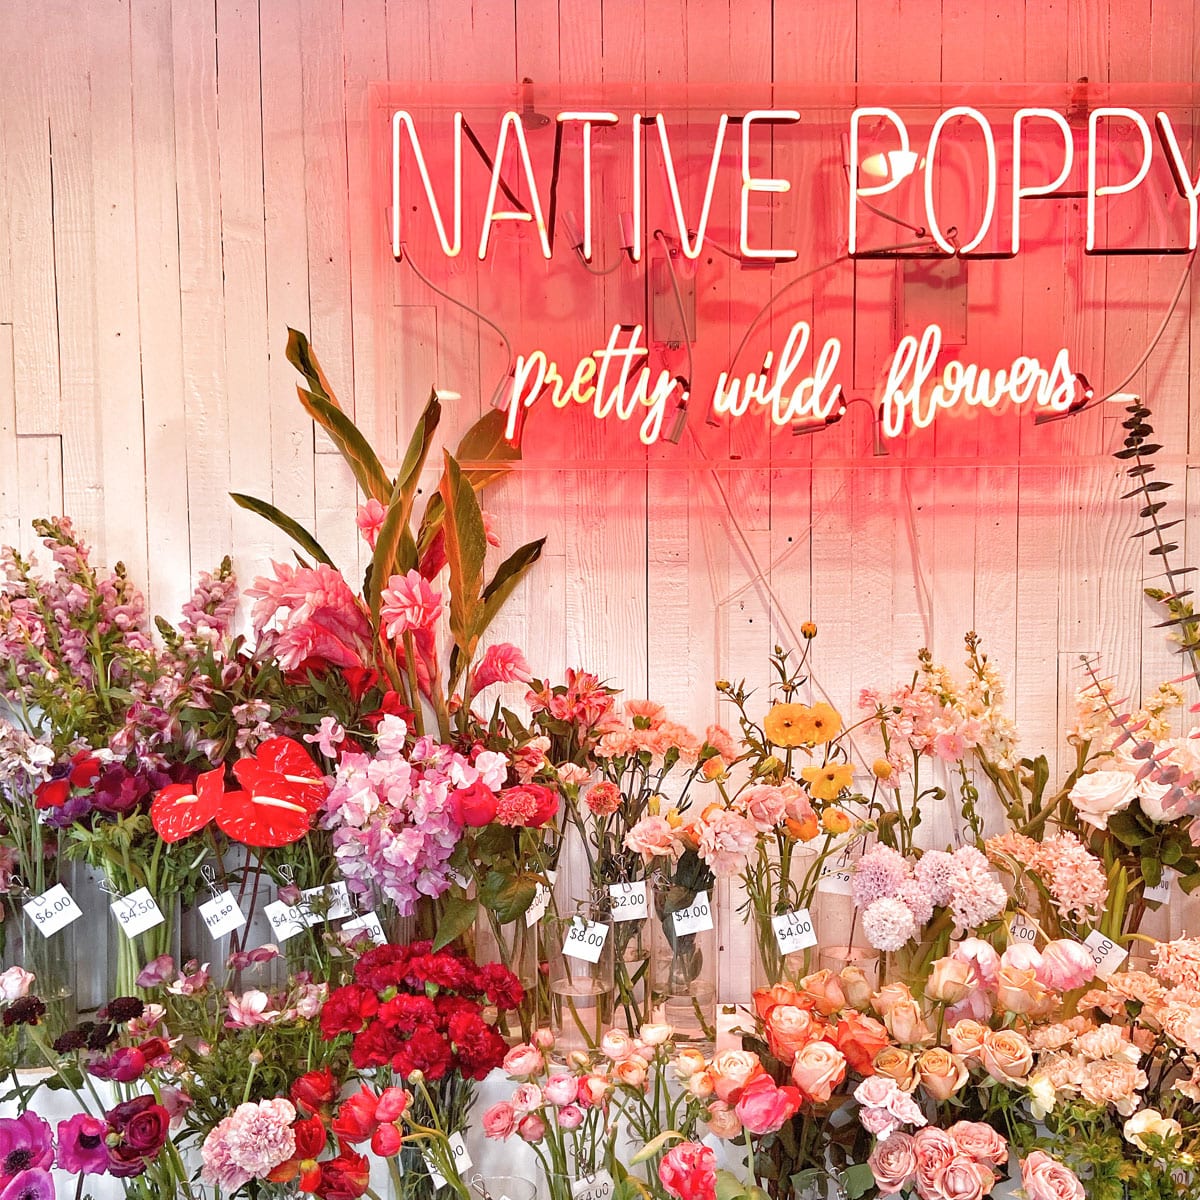 Native Poppy Flowers South Park